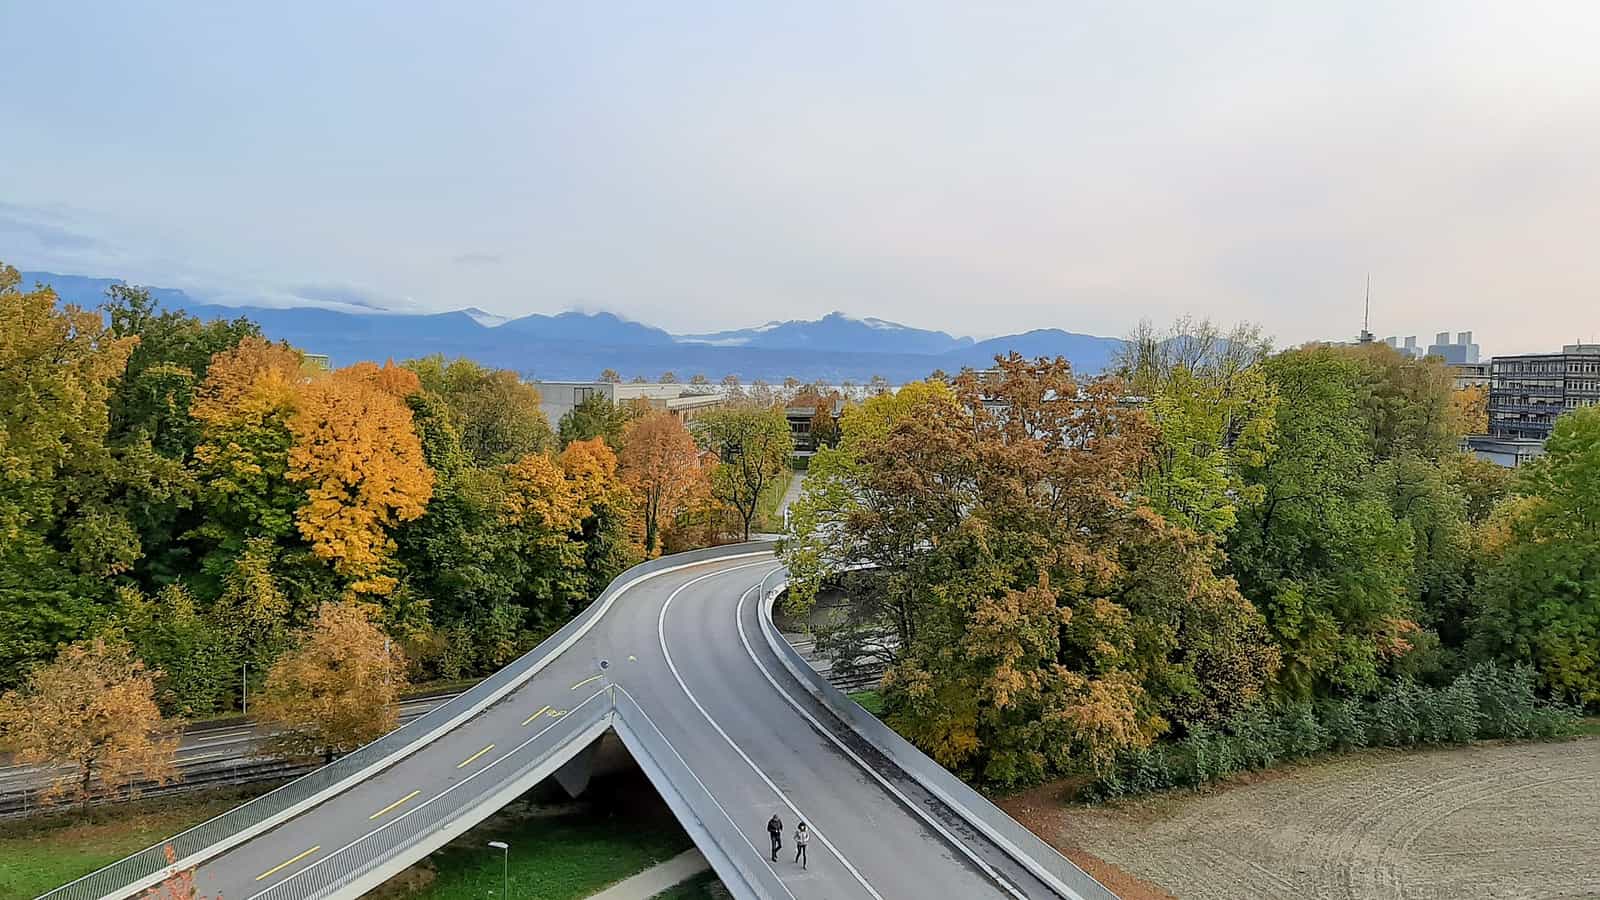 Blick vom Vortex-Gebäude auf die Alpen. Herbstfarben und geteilte Straße.